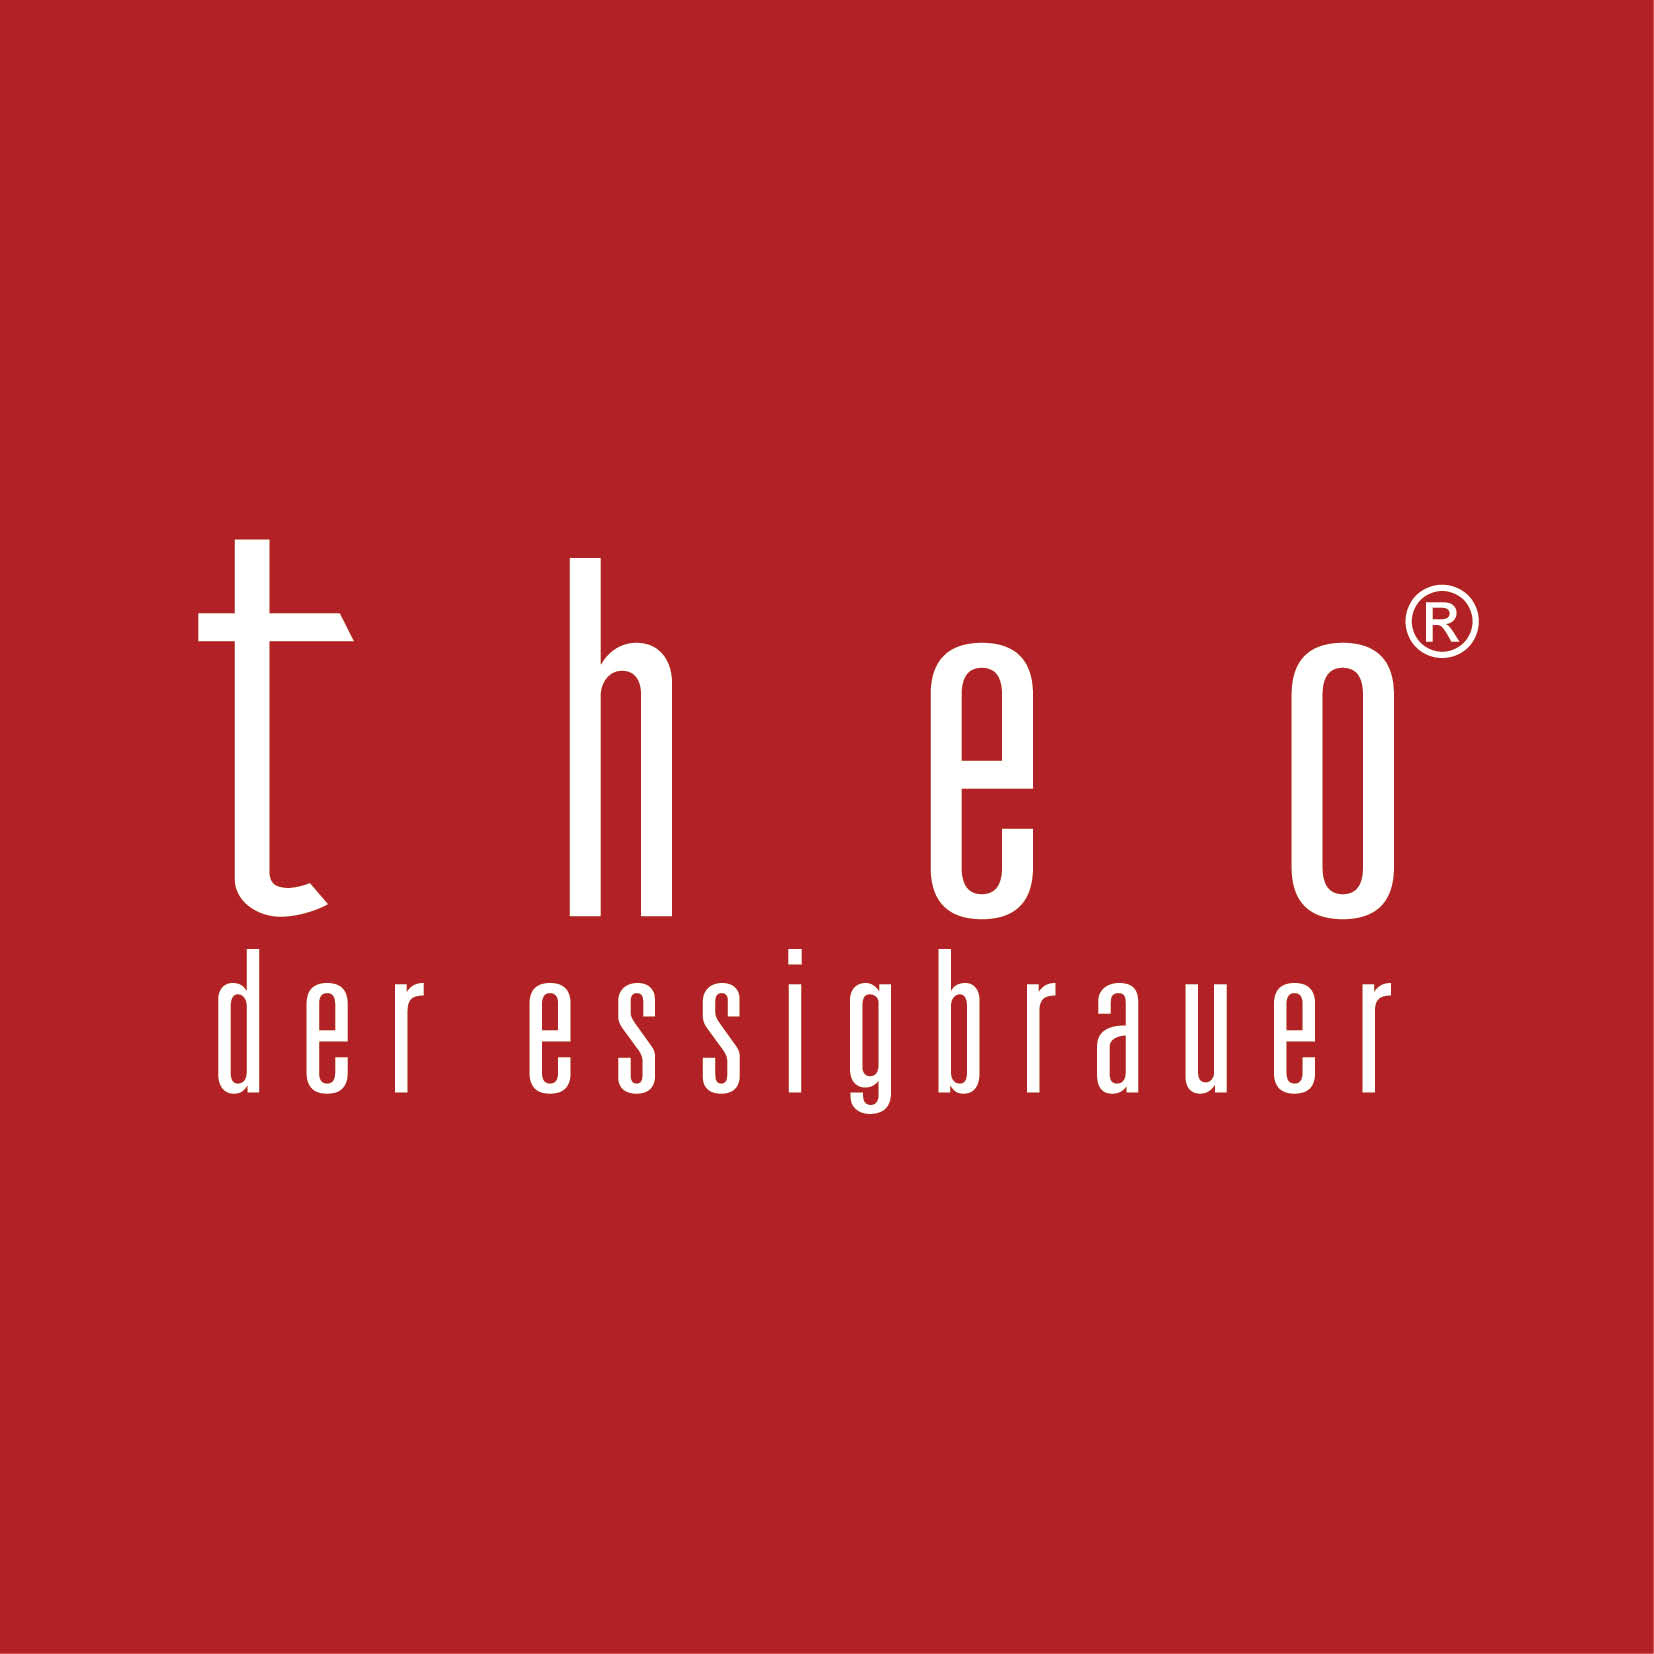 Shop - "Theo der Essigbrauer"